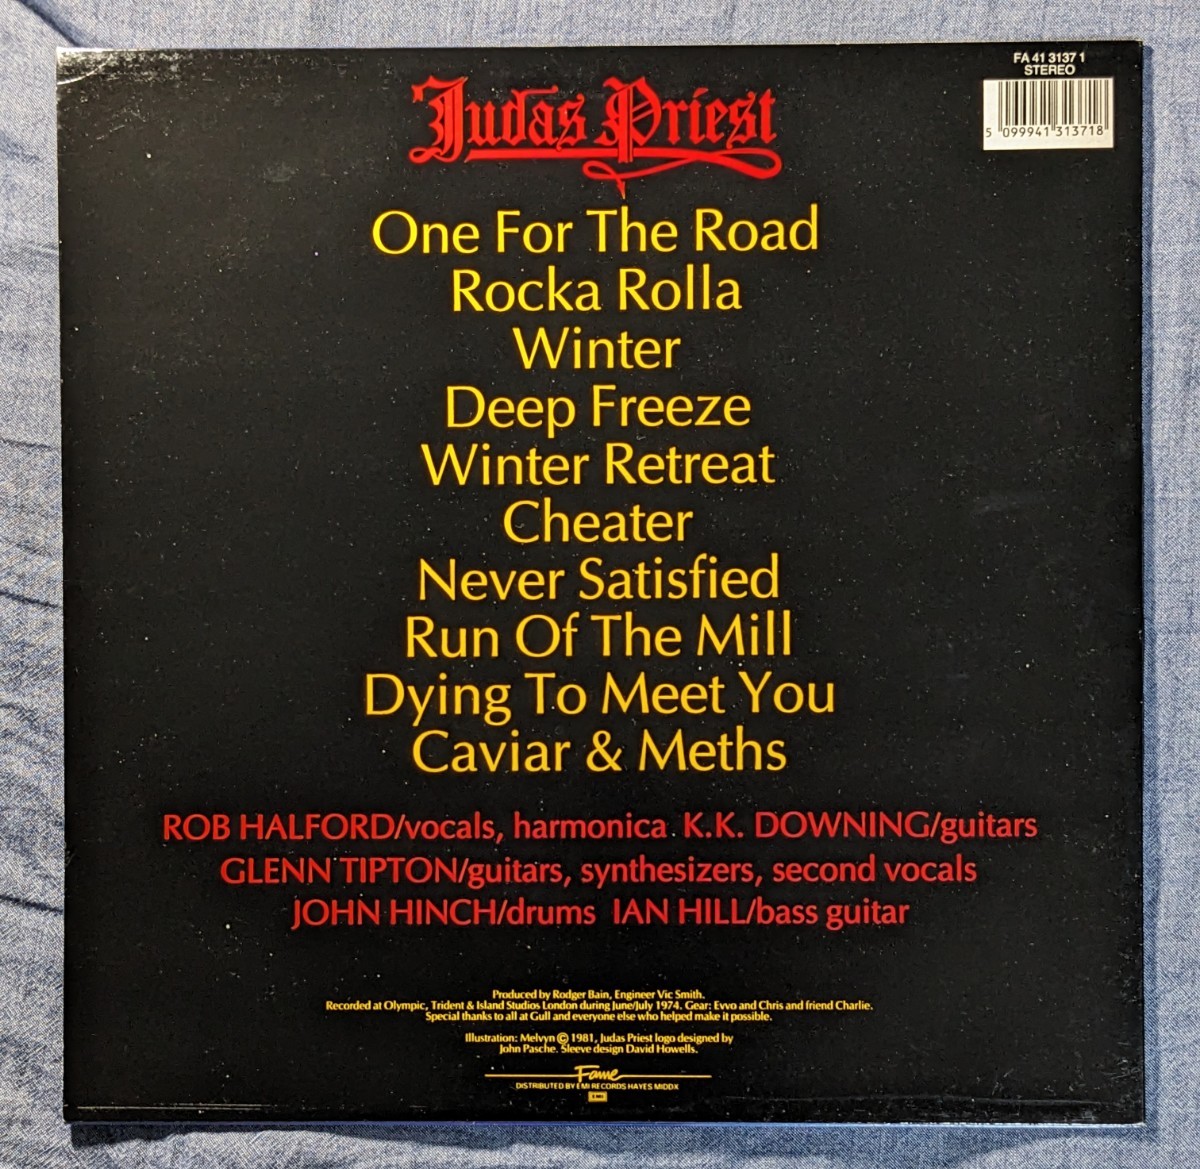 ロッカ・ローラ / ジューダス・プリースト / Rocka Rolla / Judas Priest / LPレコード / 輸入盤 / アナログ盤 【試聴済】_画像2